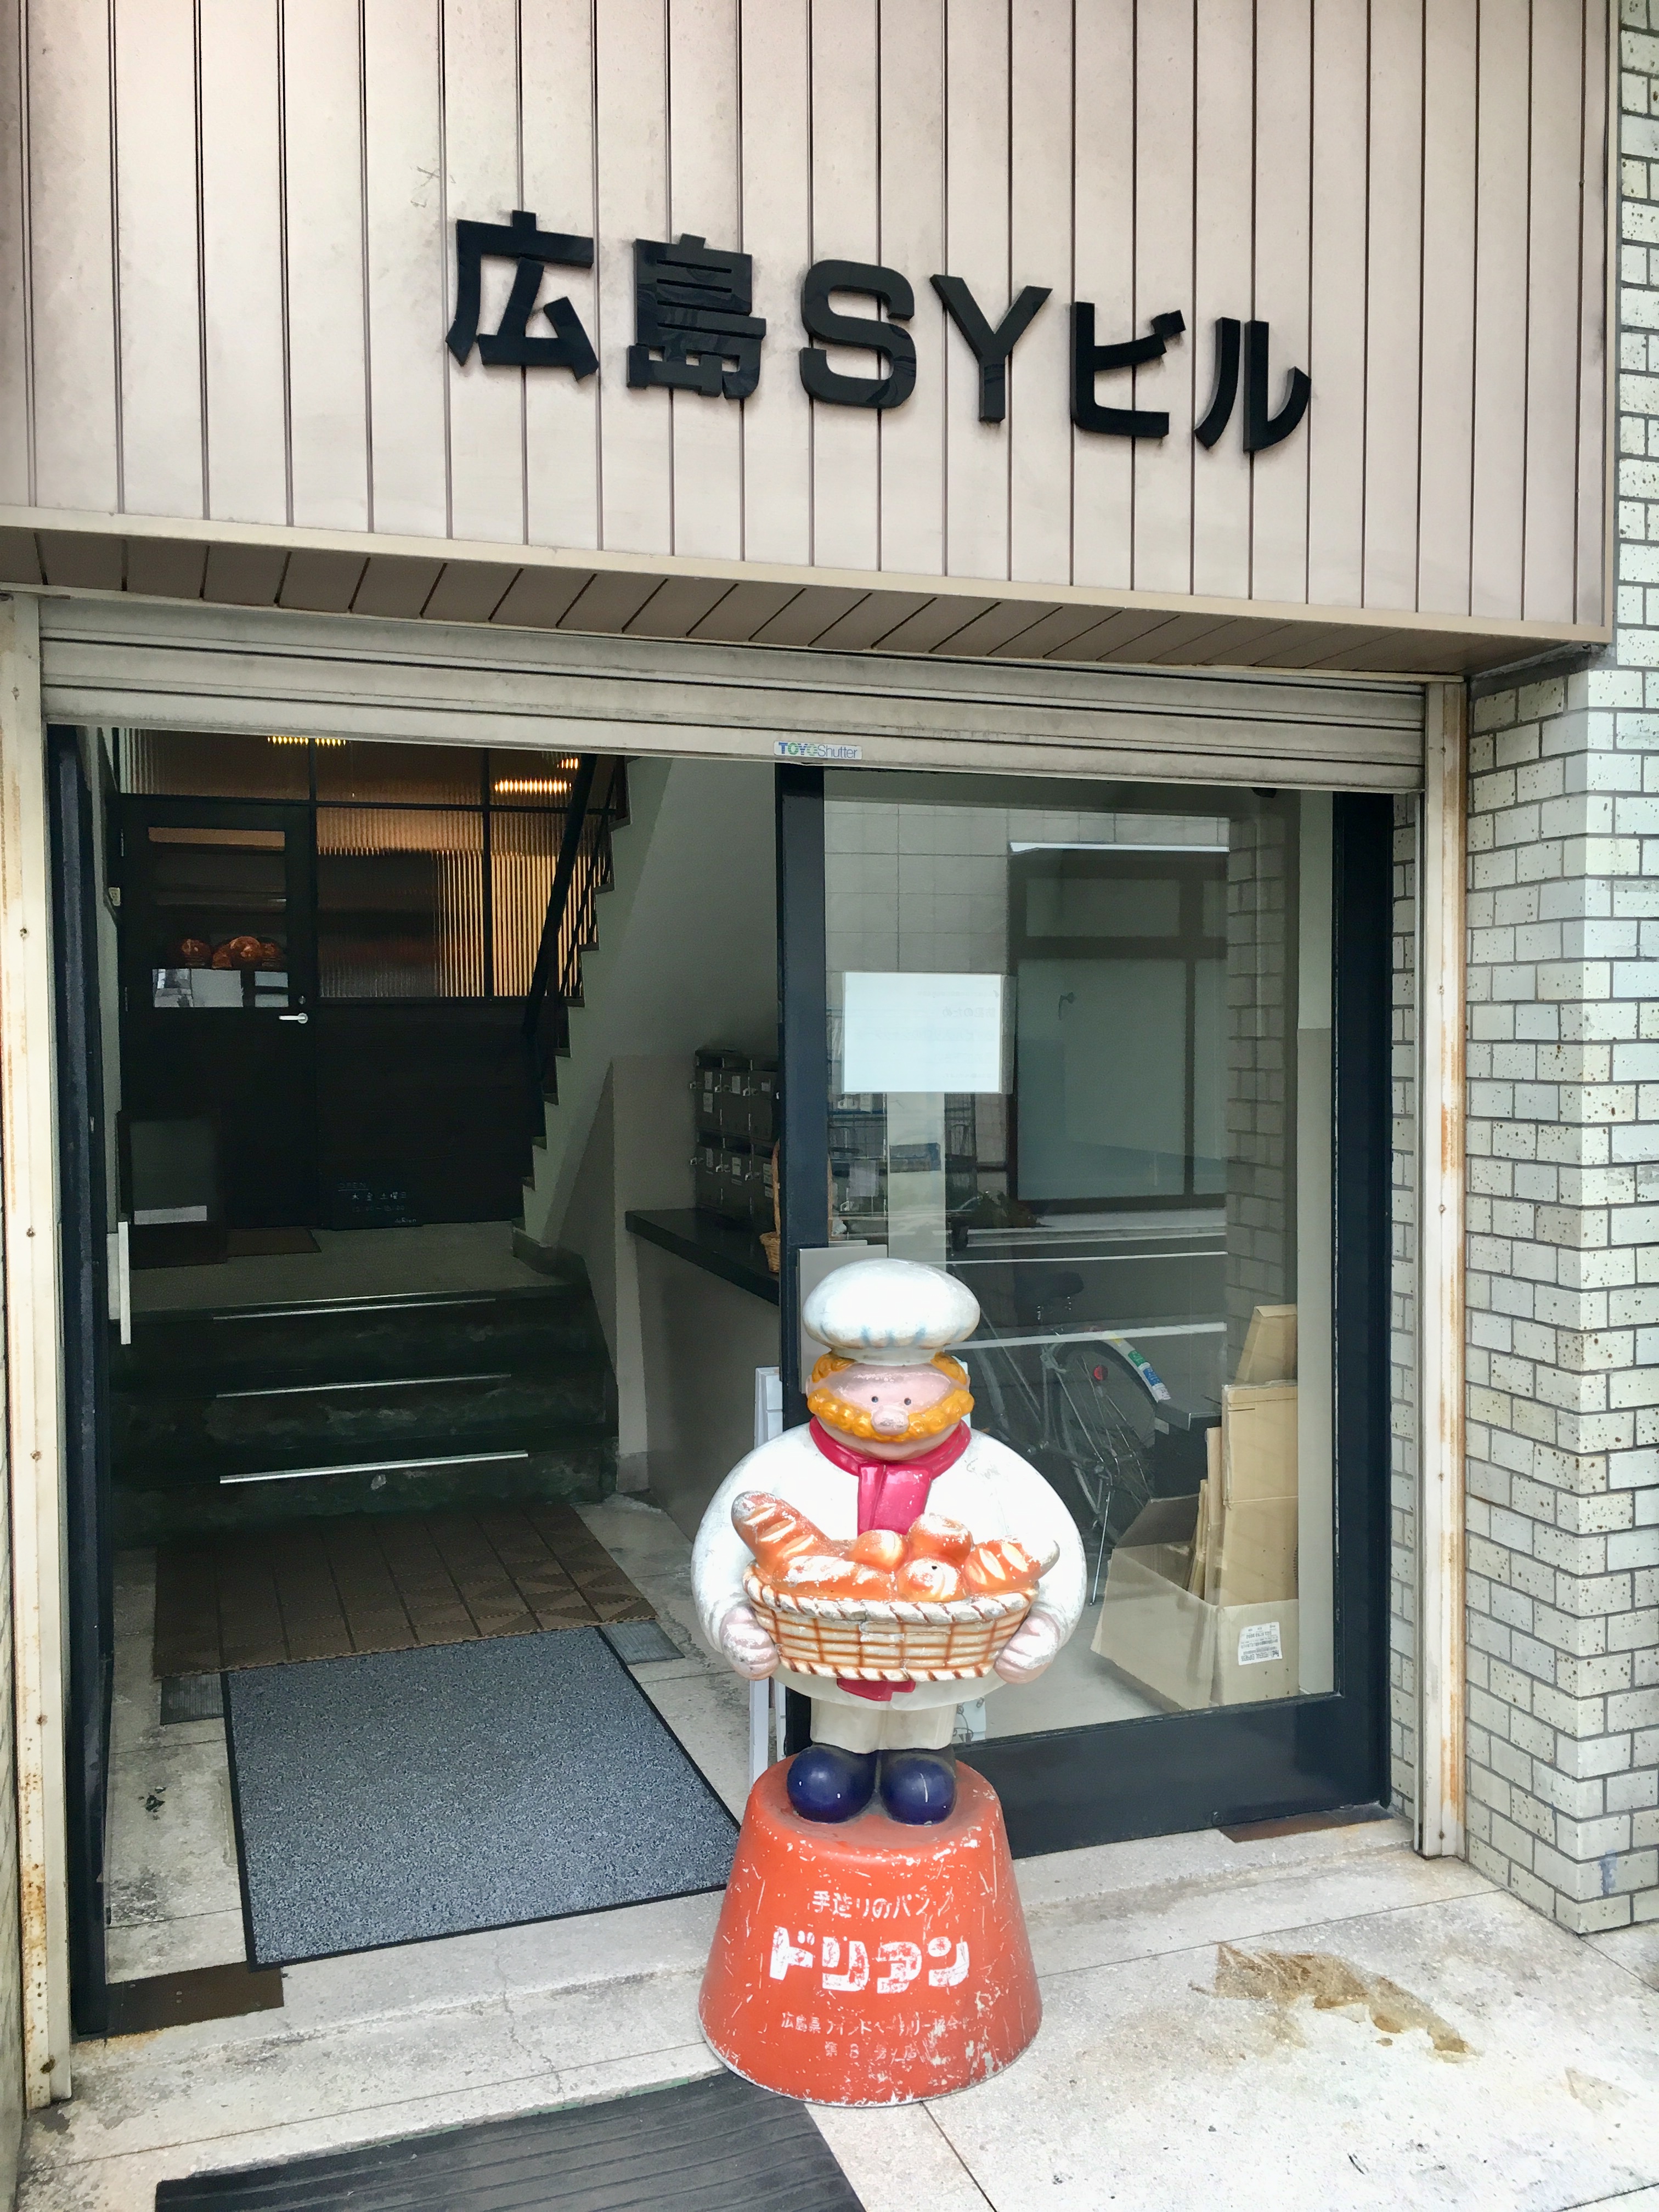 捨てないパン屋 広島の超人気店 ブーランジェリー ドリアン パンめぐ ぱんめぐ パンメグ